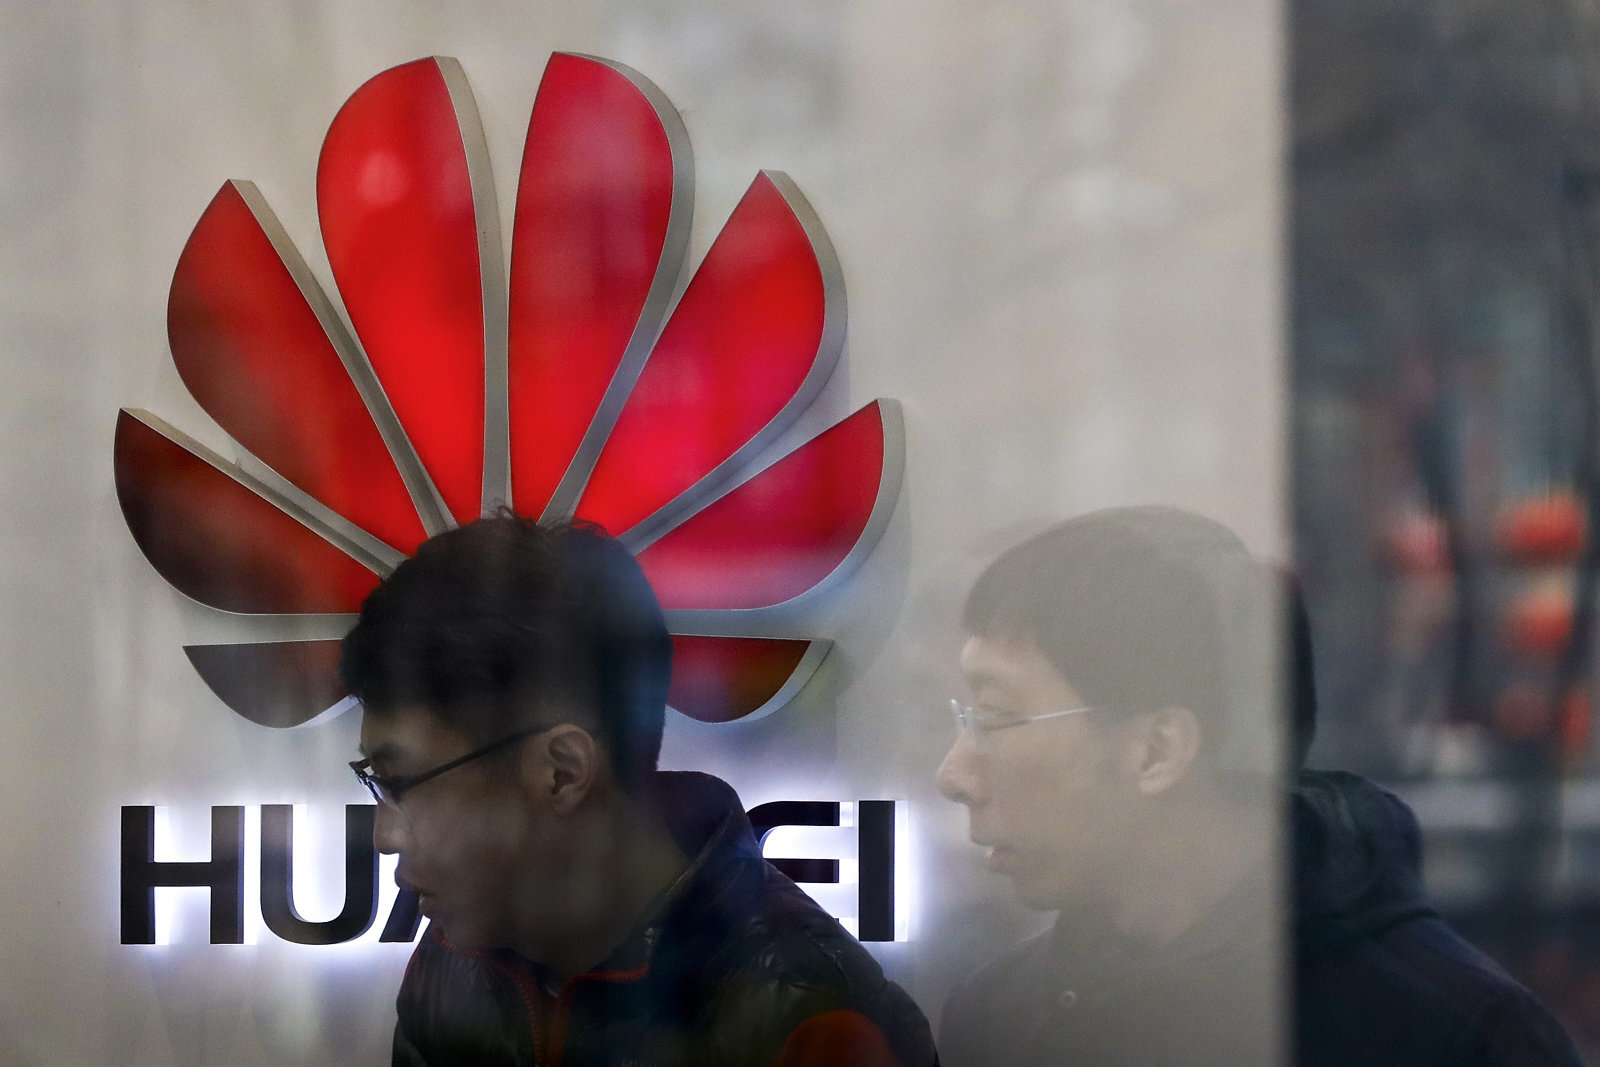 Σε εκατοντάδες απολύσεις αναμένεται να προχωρήσει η Huawei στις ΗΠΑ